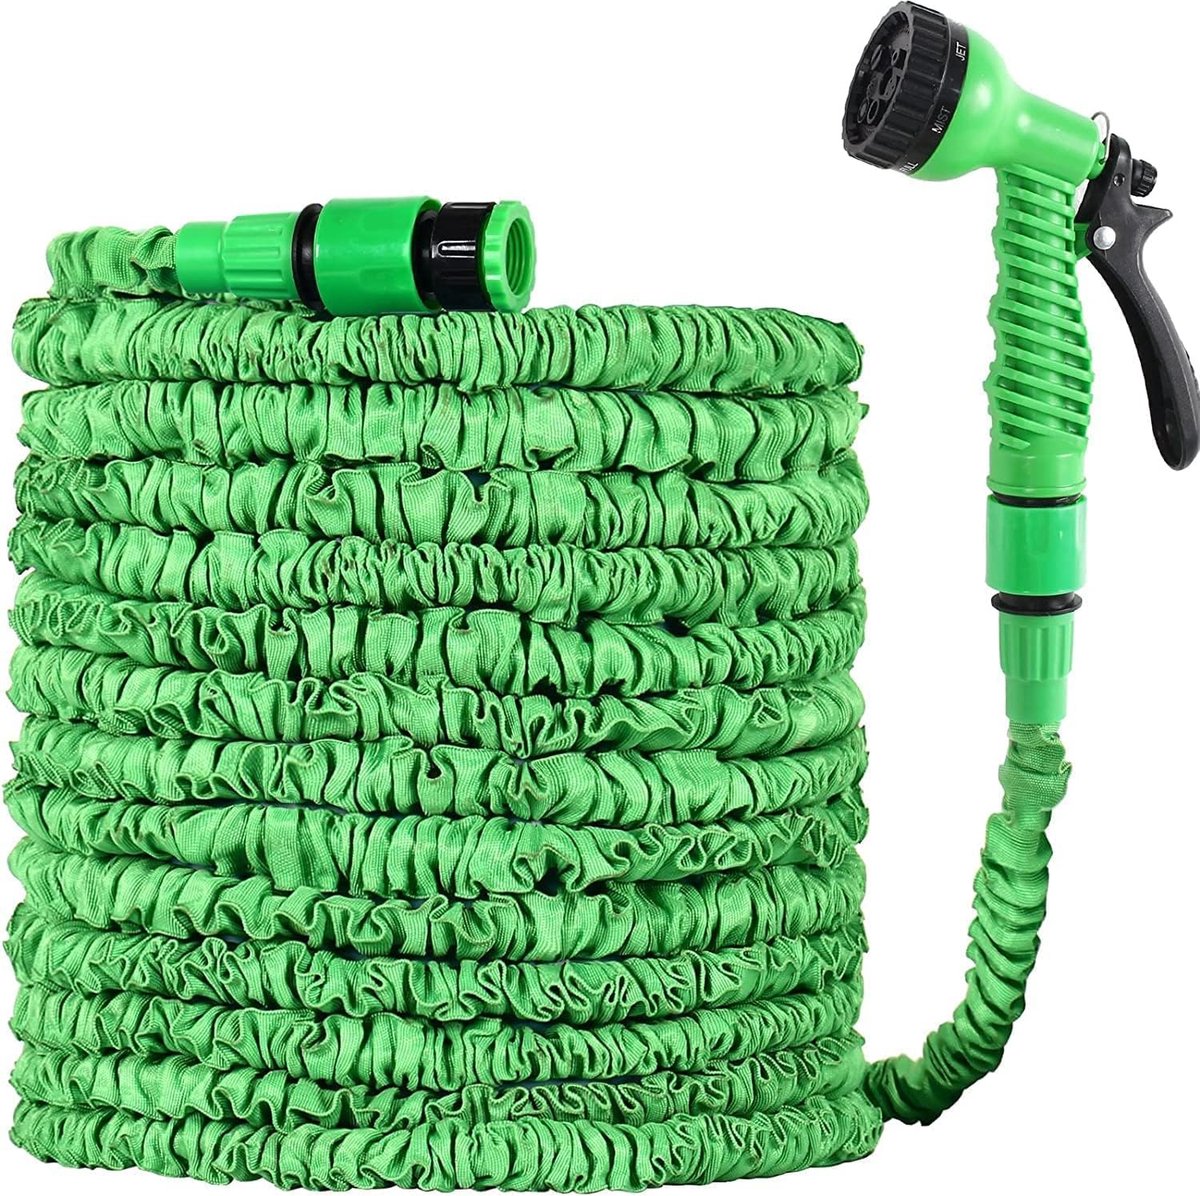 Tuinslang Flexibel 22M Flexibele Gardena-slang Waterslang met 7 modi Uitbreidbaar slangspuitpistool, tuinslanghaspel, magische waterpijp (22M, groen)